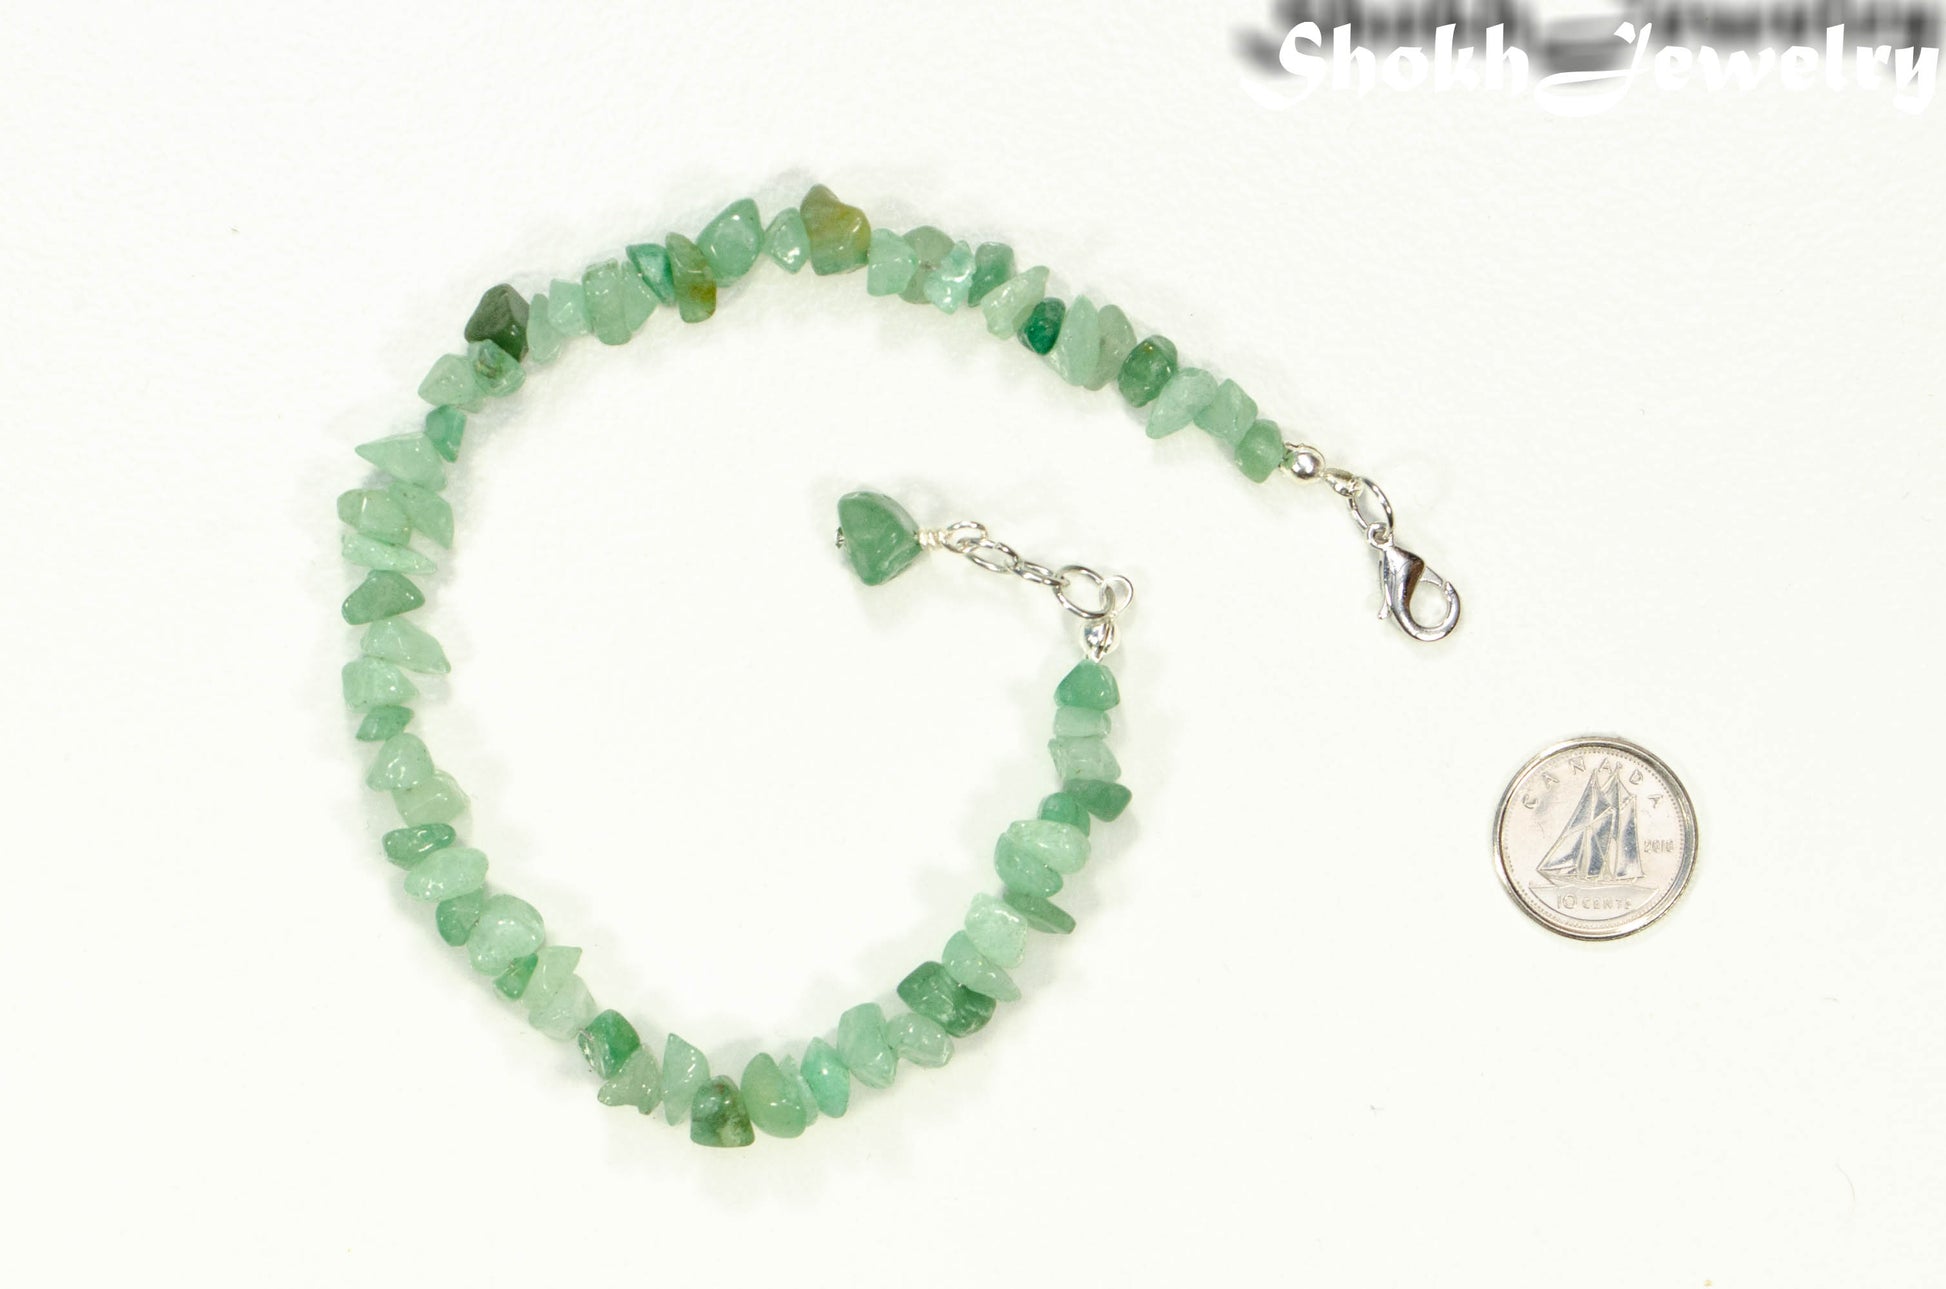  Chengmu 99Pcs 8mm Green Aventurine Beads for Jewelry